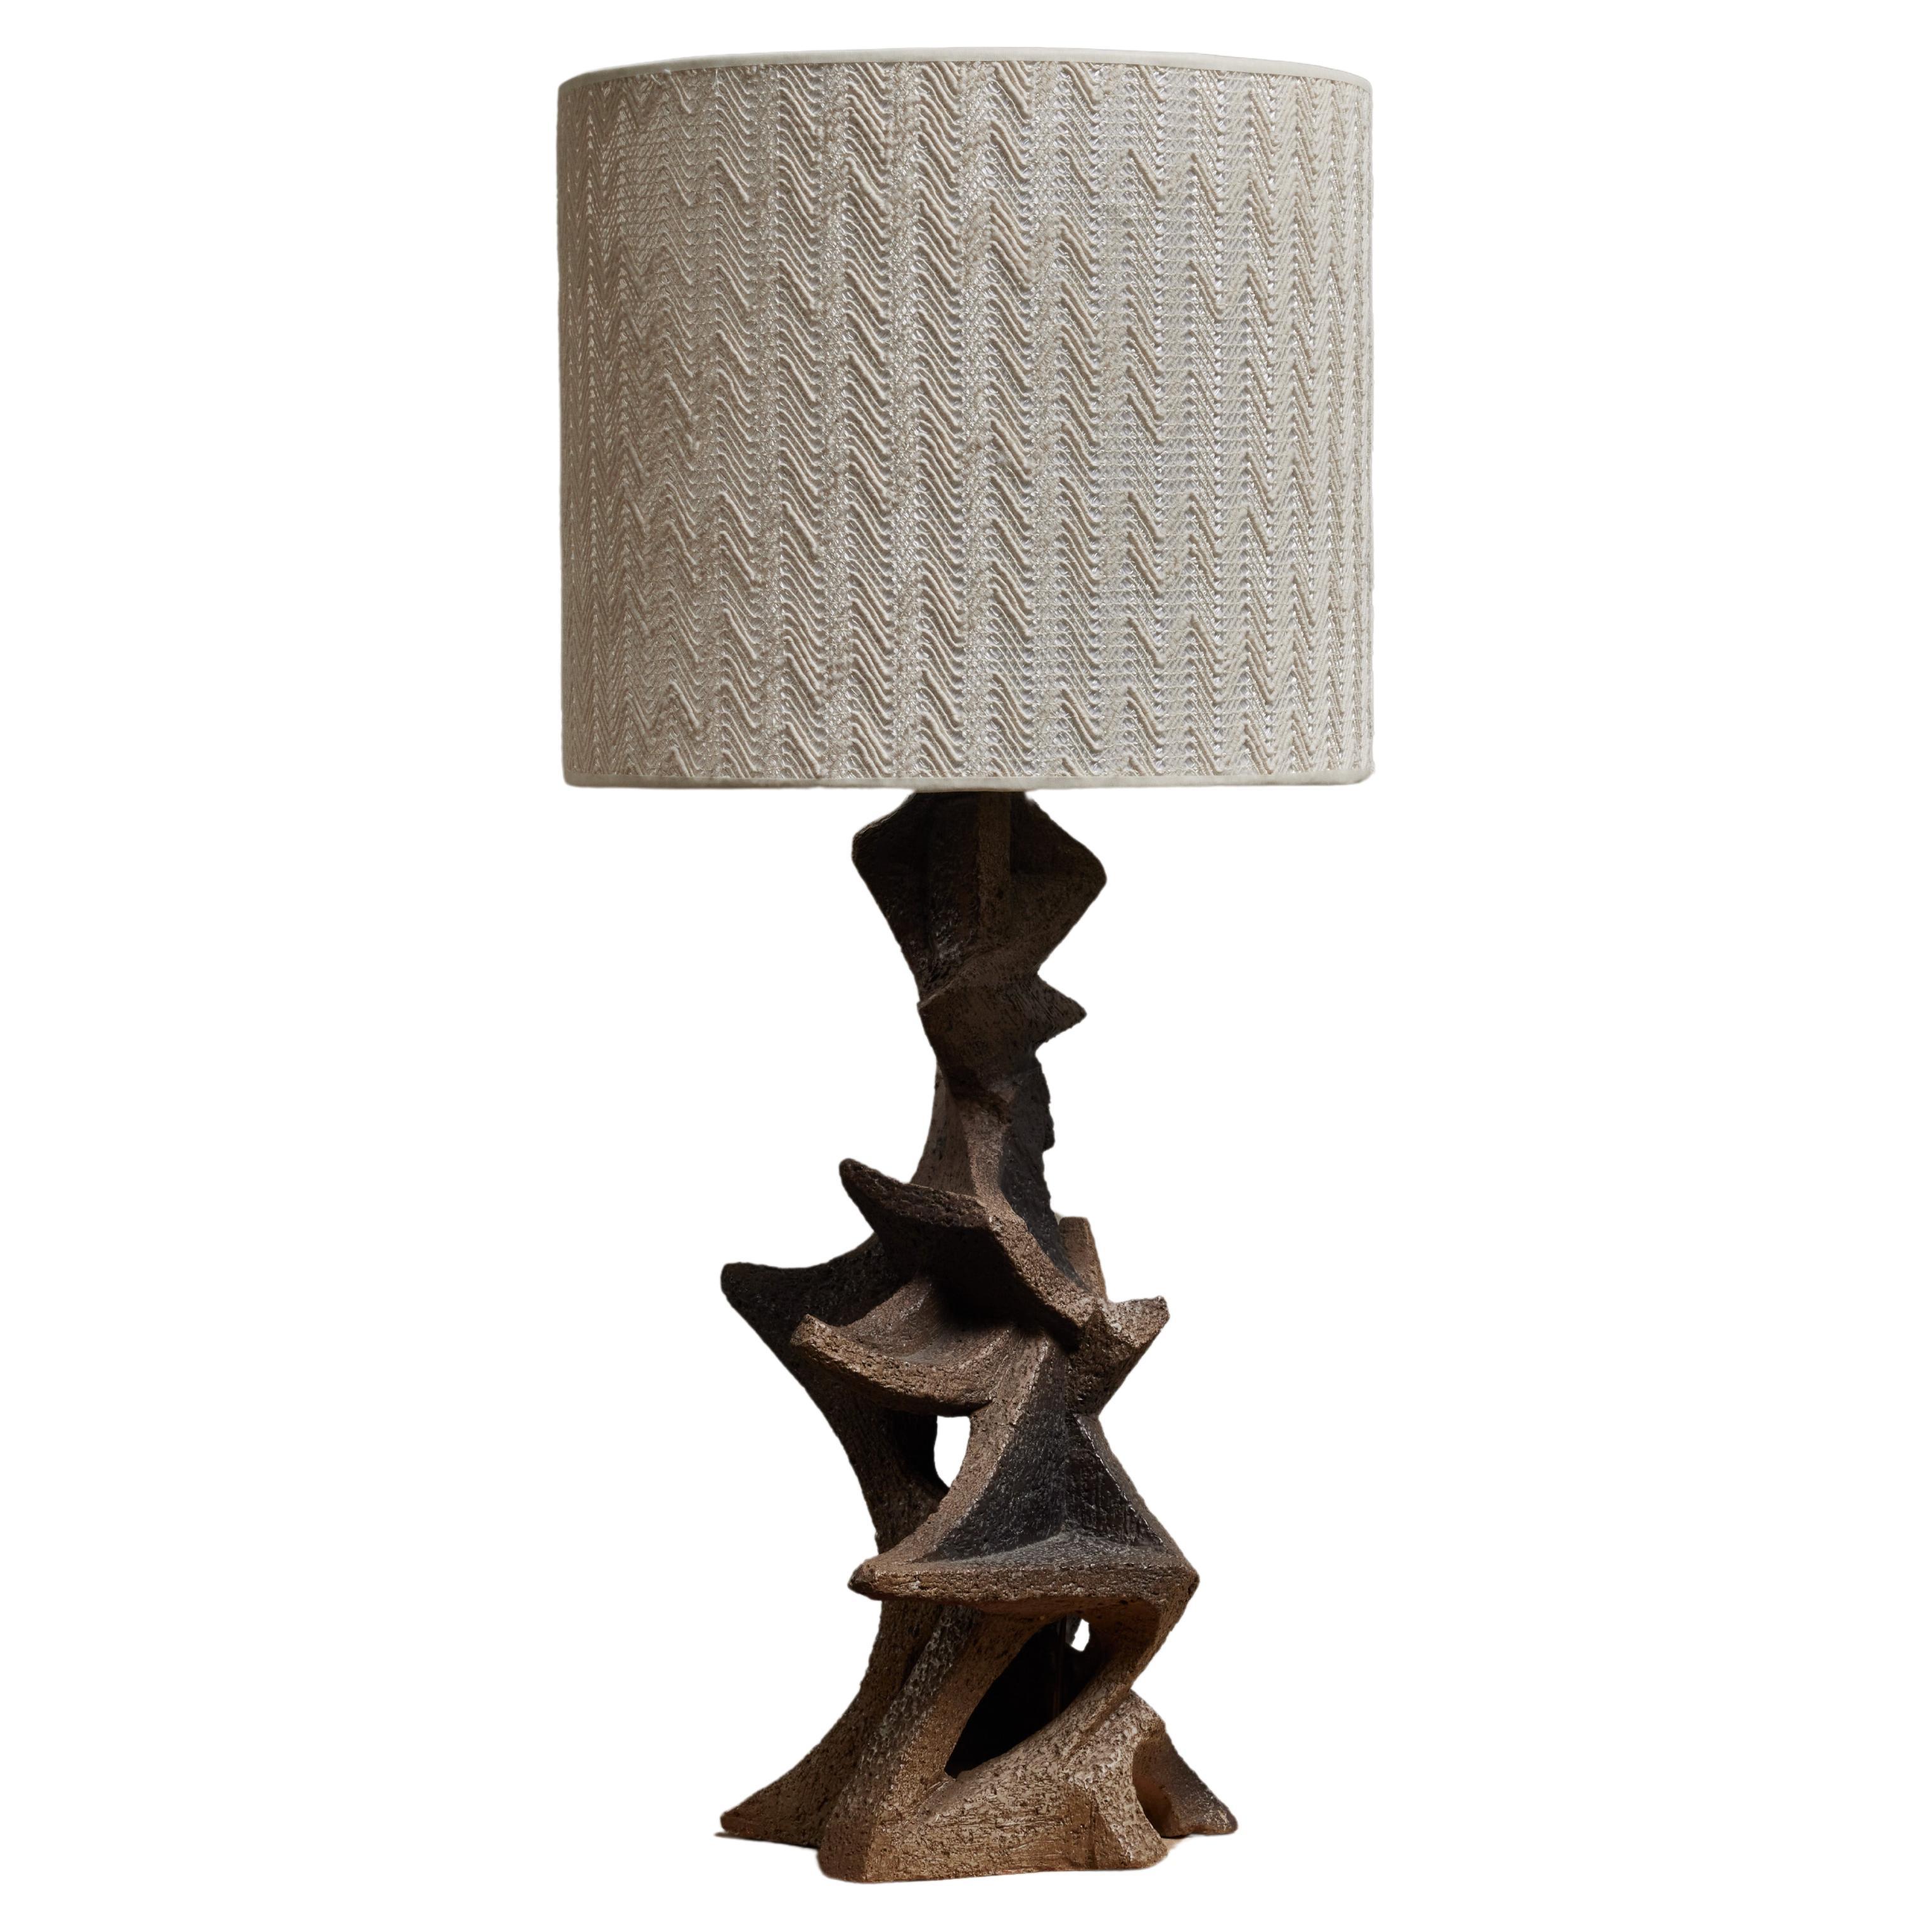 Ceramic table Lamp by Marius Bessone